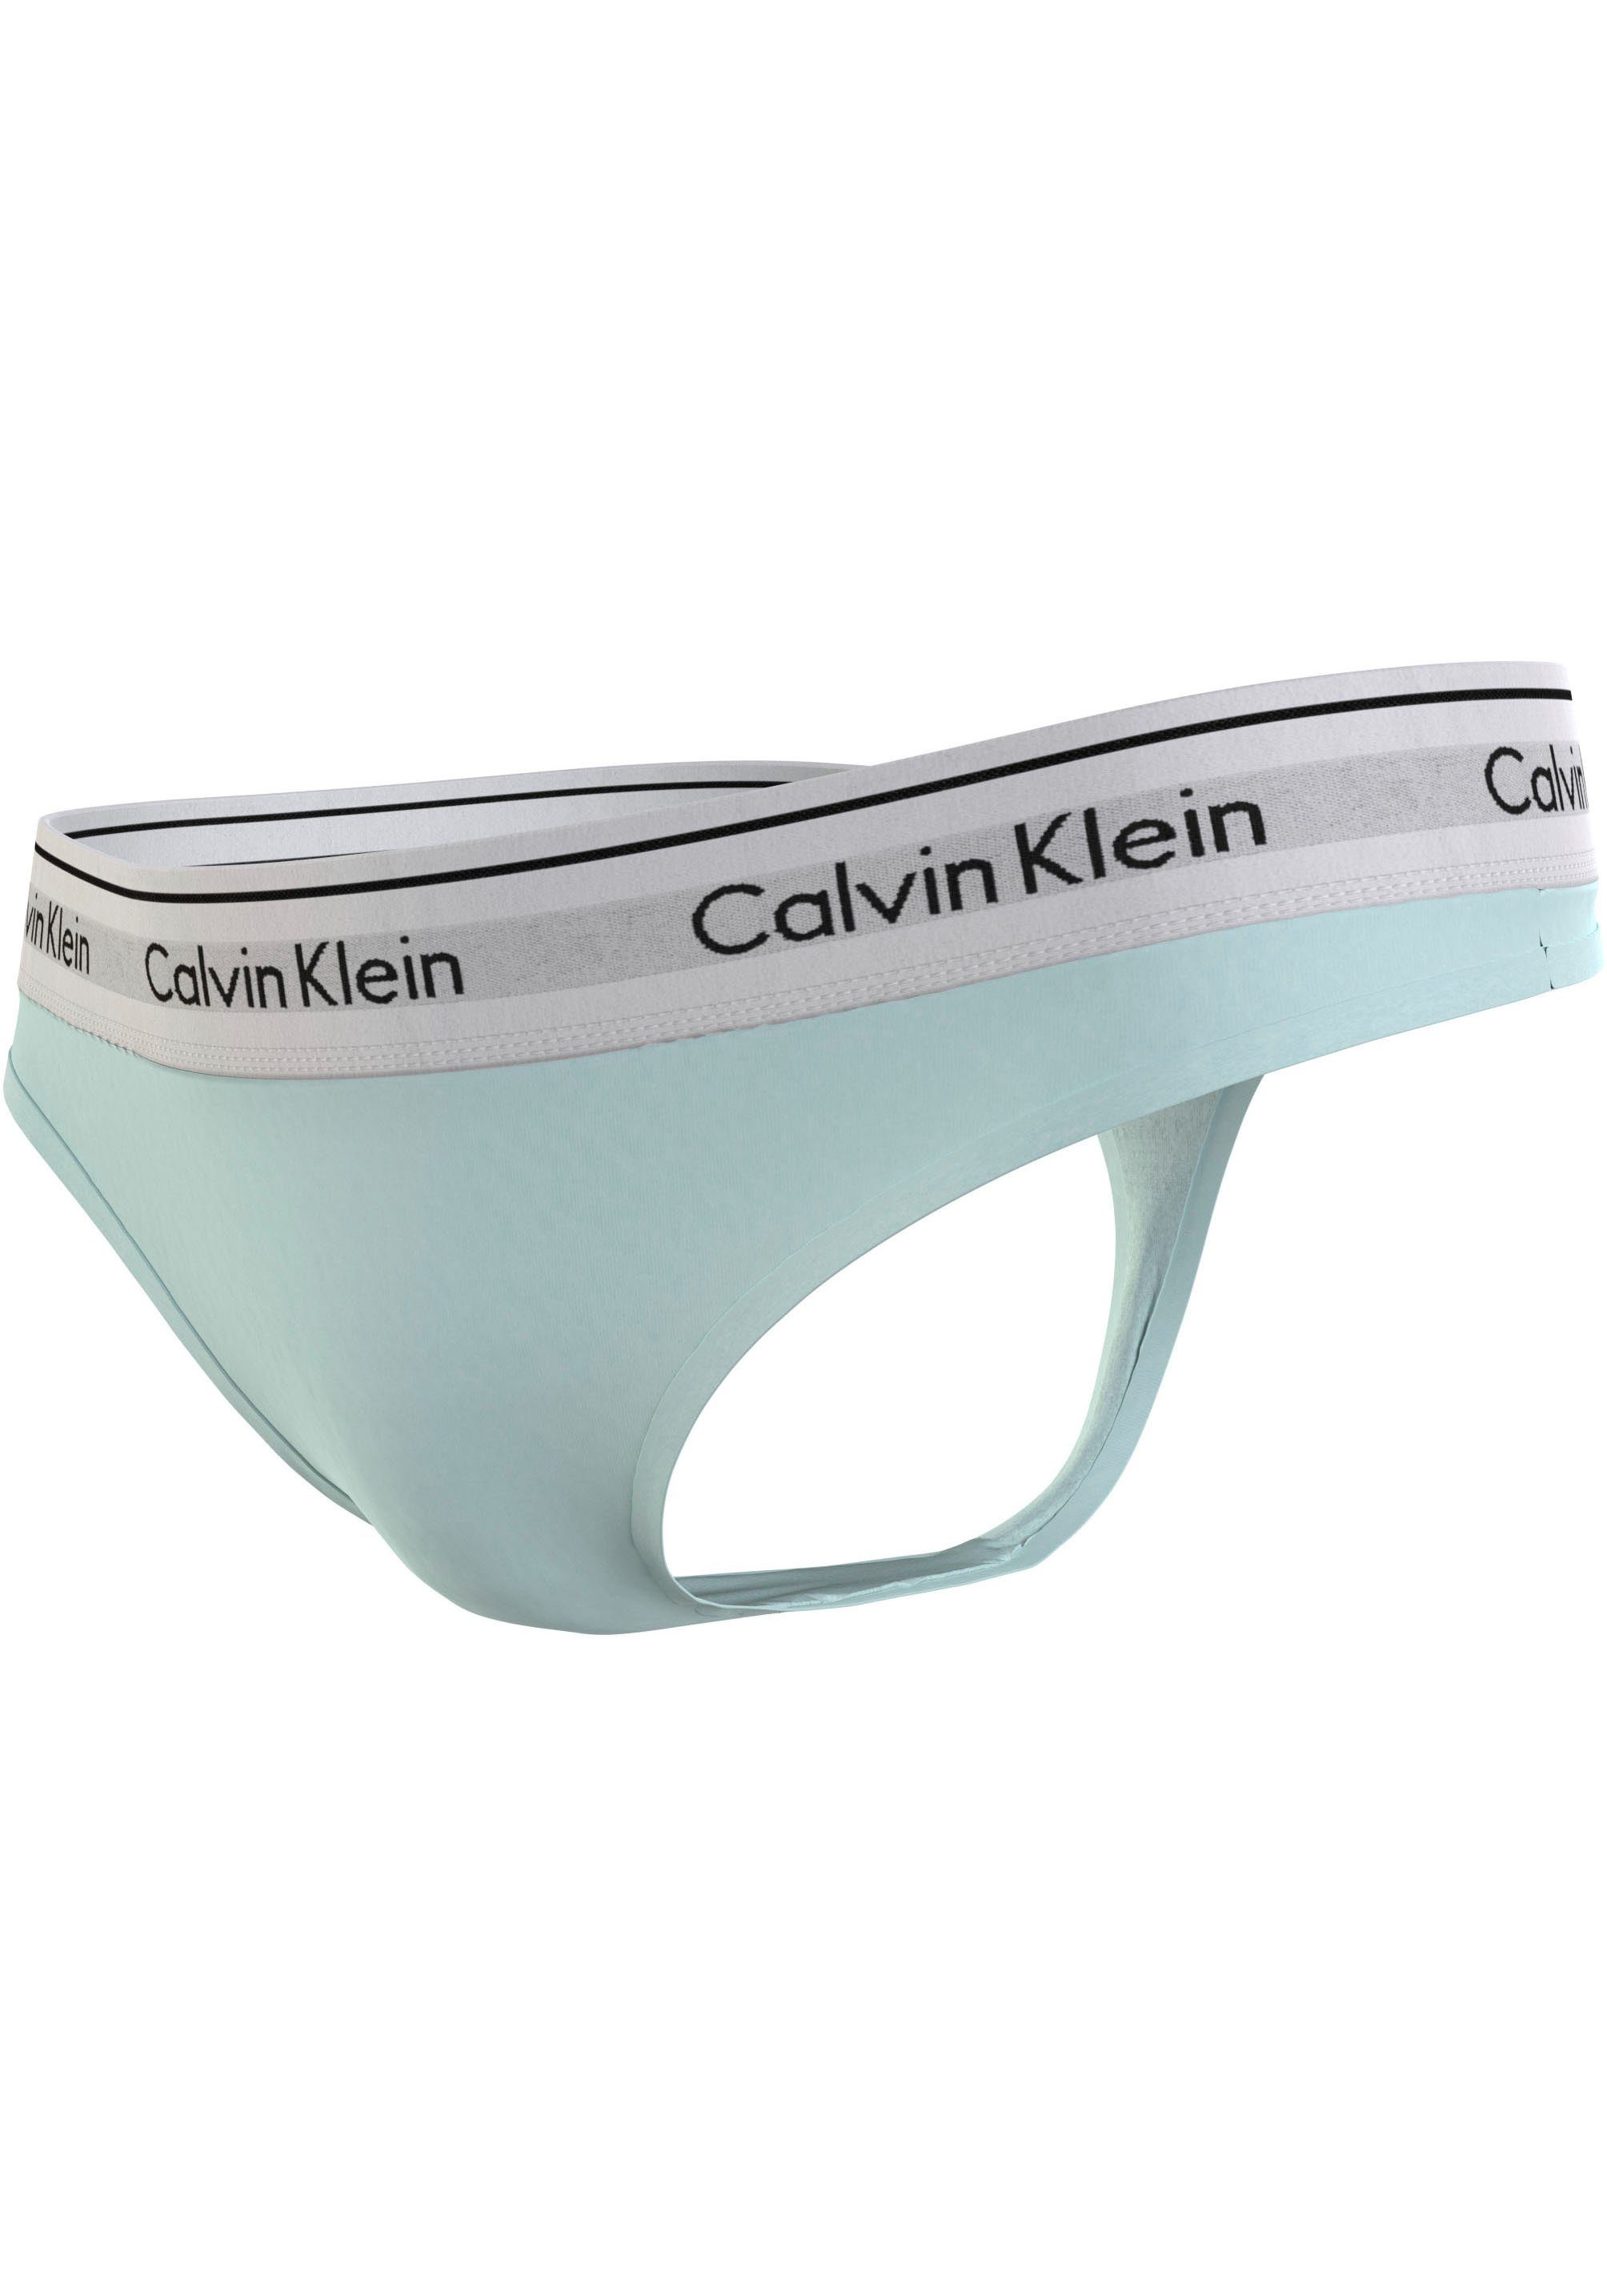 Calvin Klein T-string THONG met een logo-opschrift